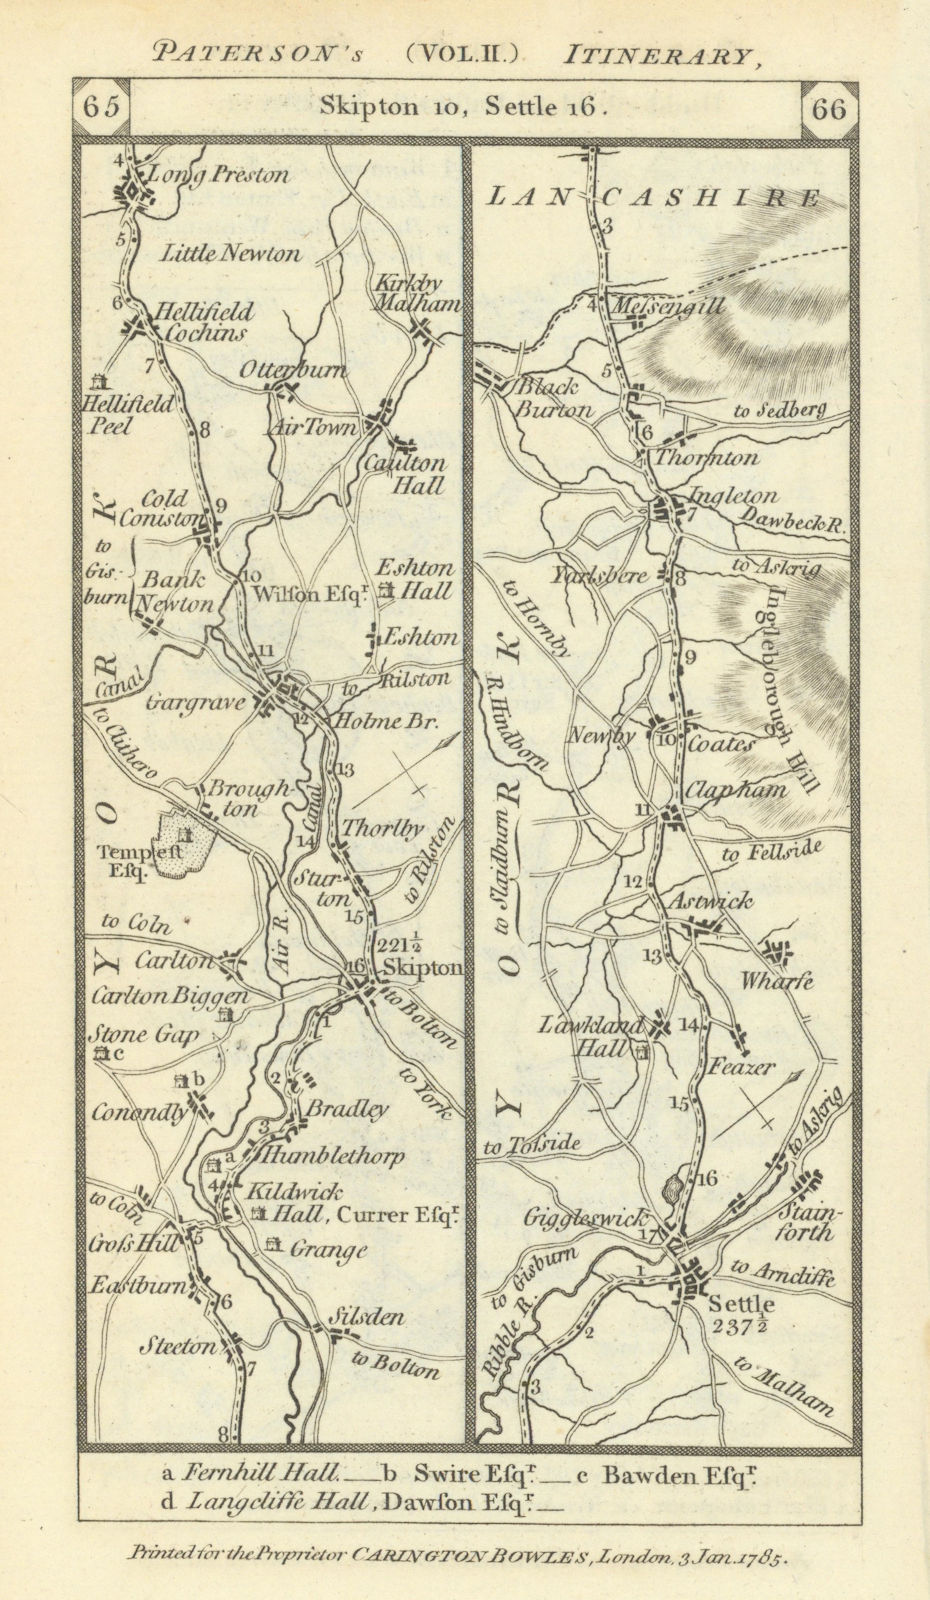 Skipton-Gargrave-Long Preston-Settle-Ingleton road strip map PATERSON 1785